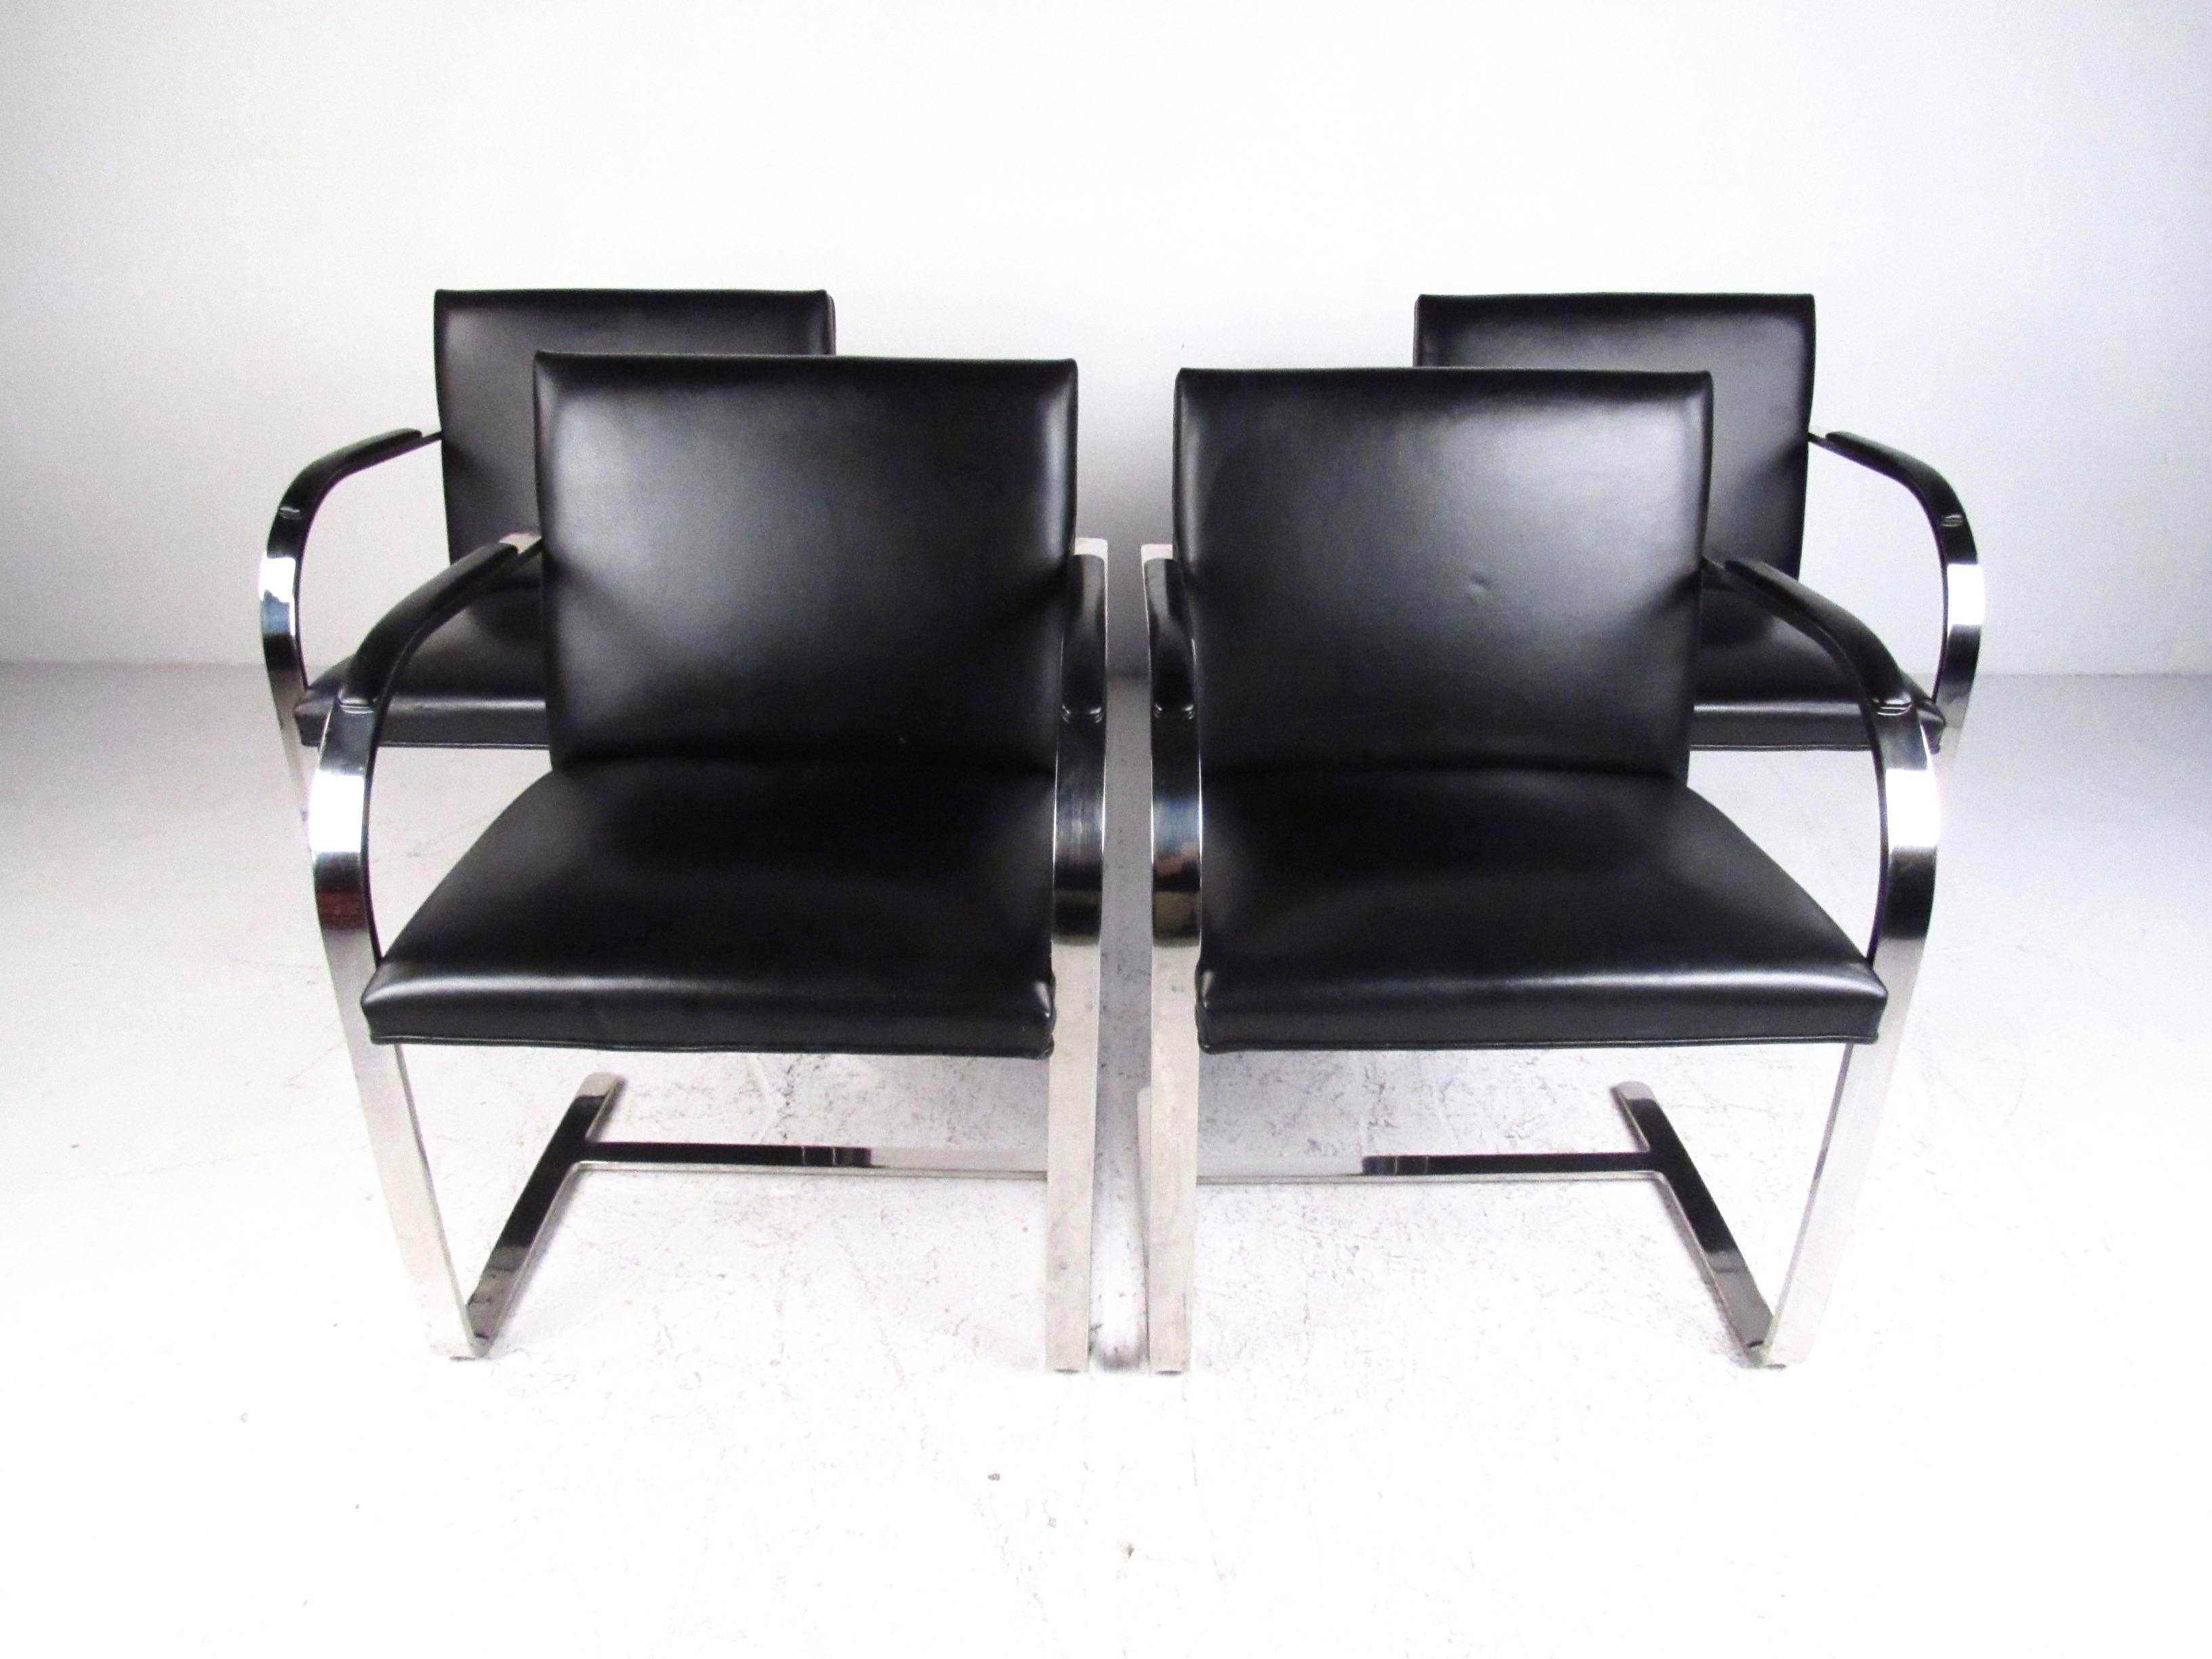 Dieses elegante Set aus vier Sesseln von Brueton ist eine stilvolle, moderne Ergänzung für jede Einrichtung, vom Esszimmer bis zum Konferenzraum. Der schwere Edelstahlrahmen und die Vintage-Polsterung tragen zum Charme des Sets bei. Großzügige